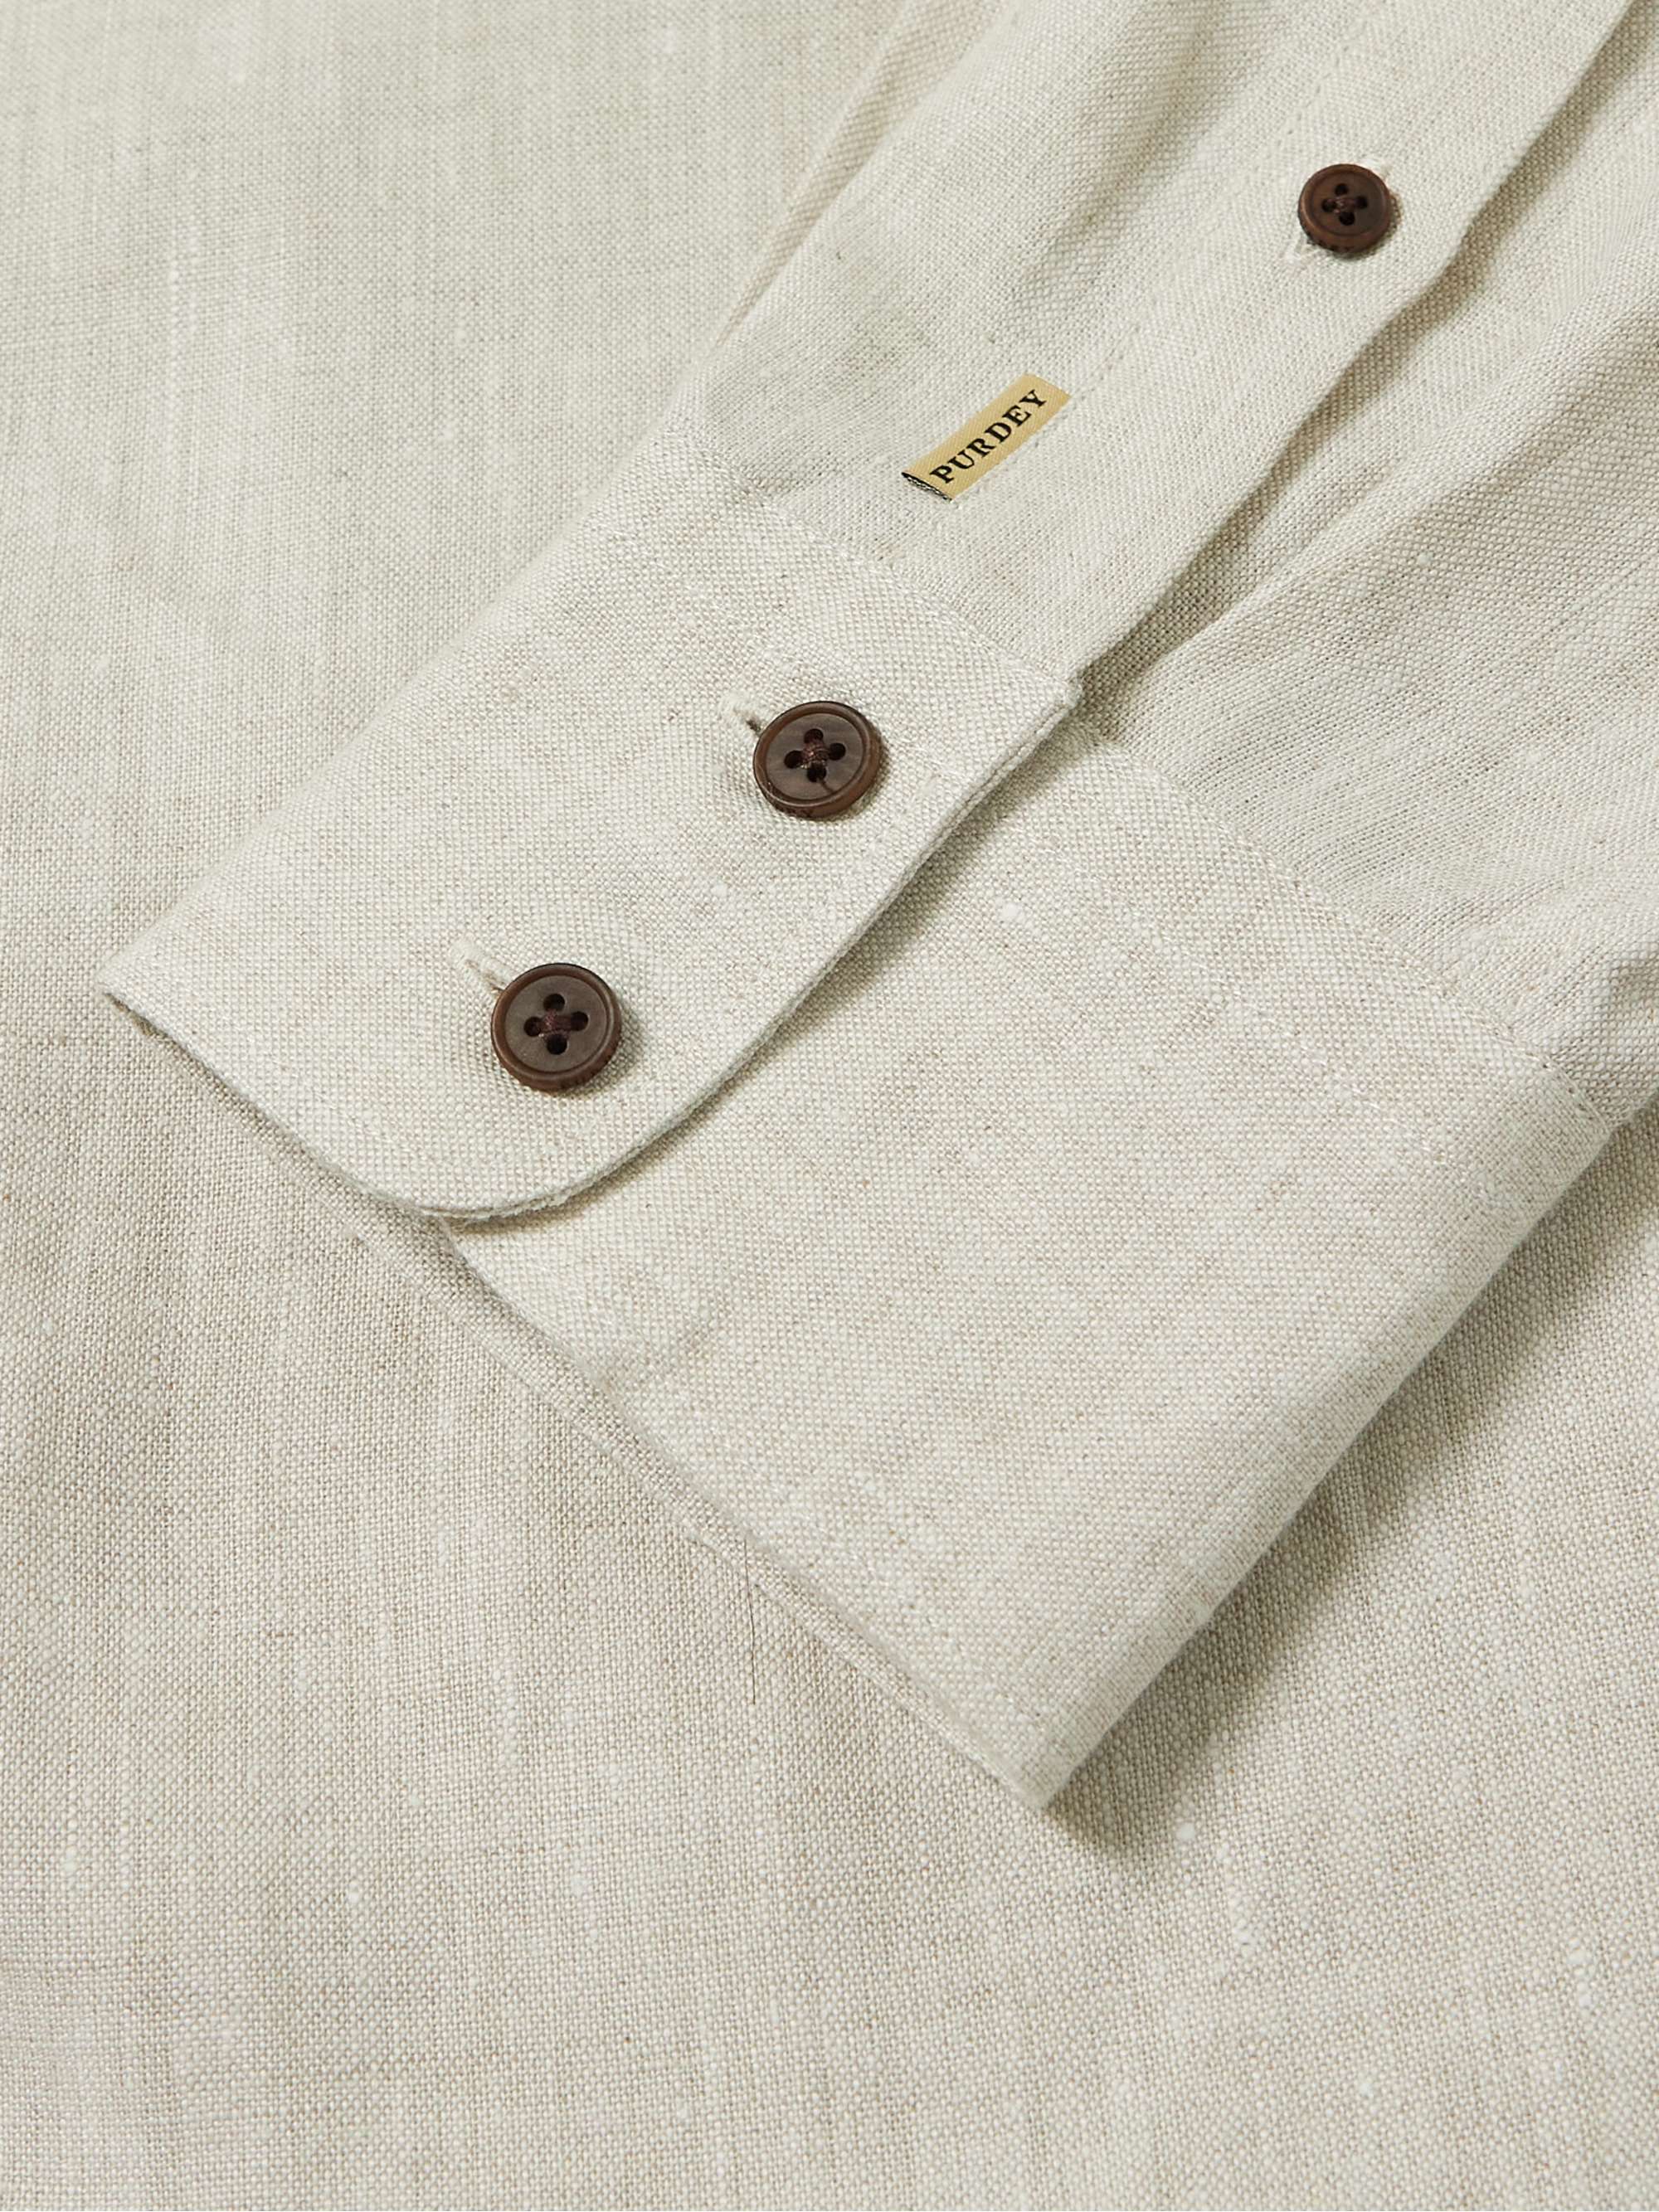 PURDEY Button-Down Collar Linen Shirt